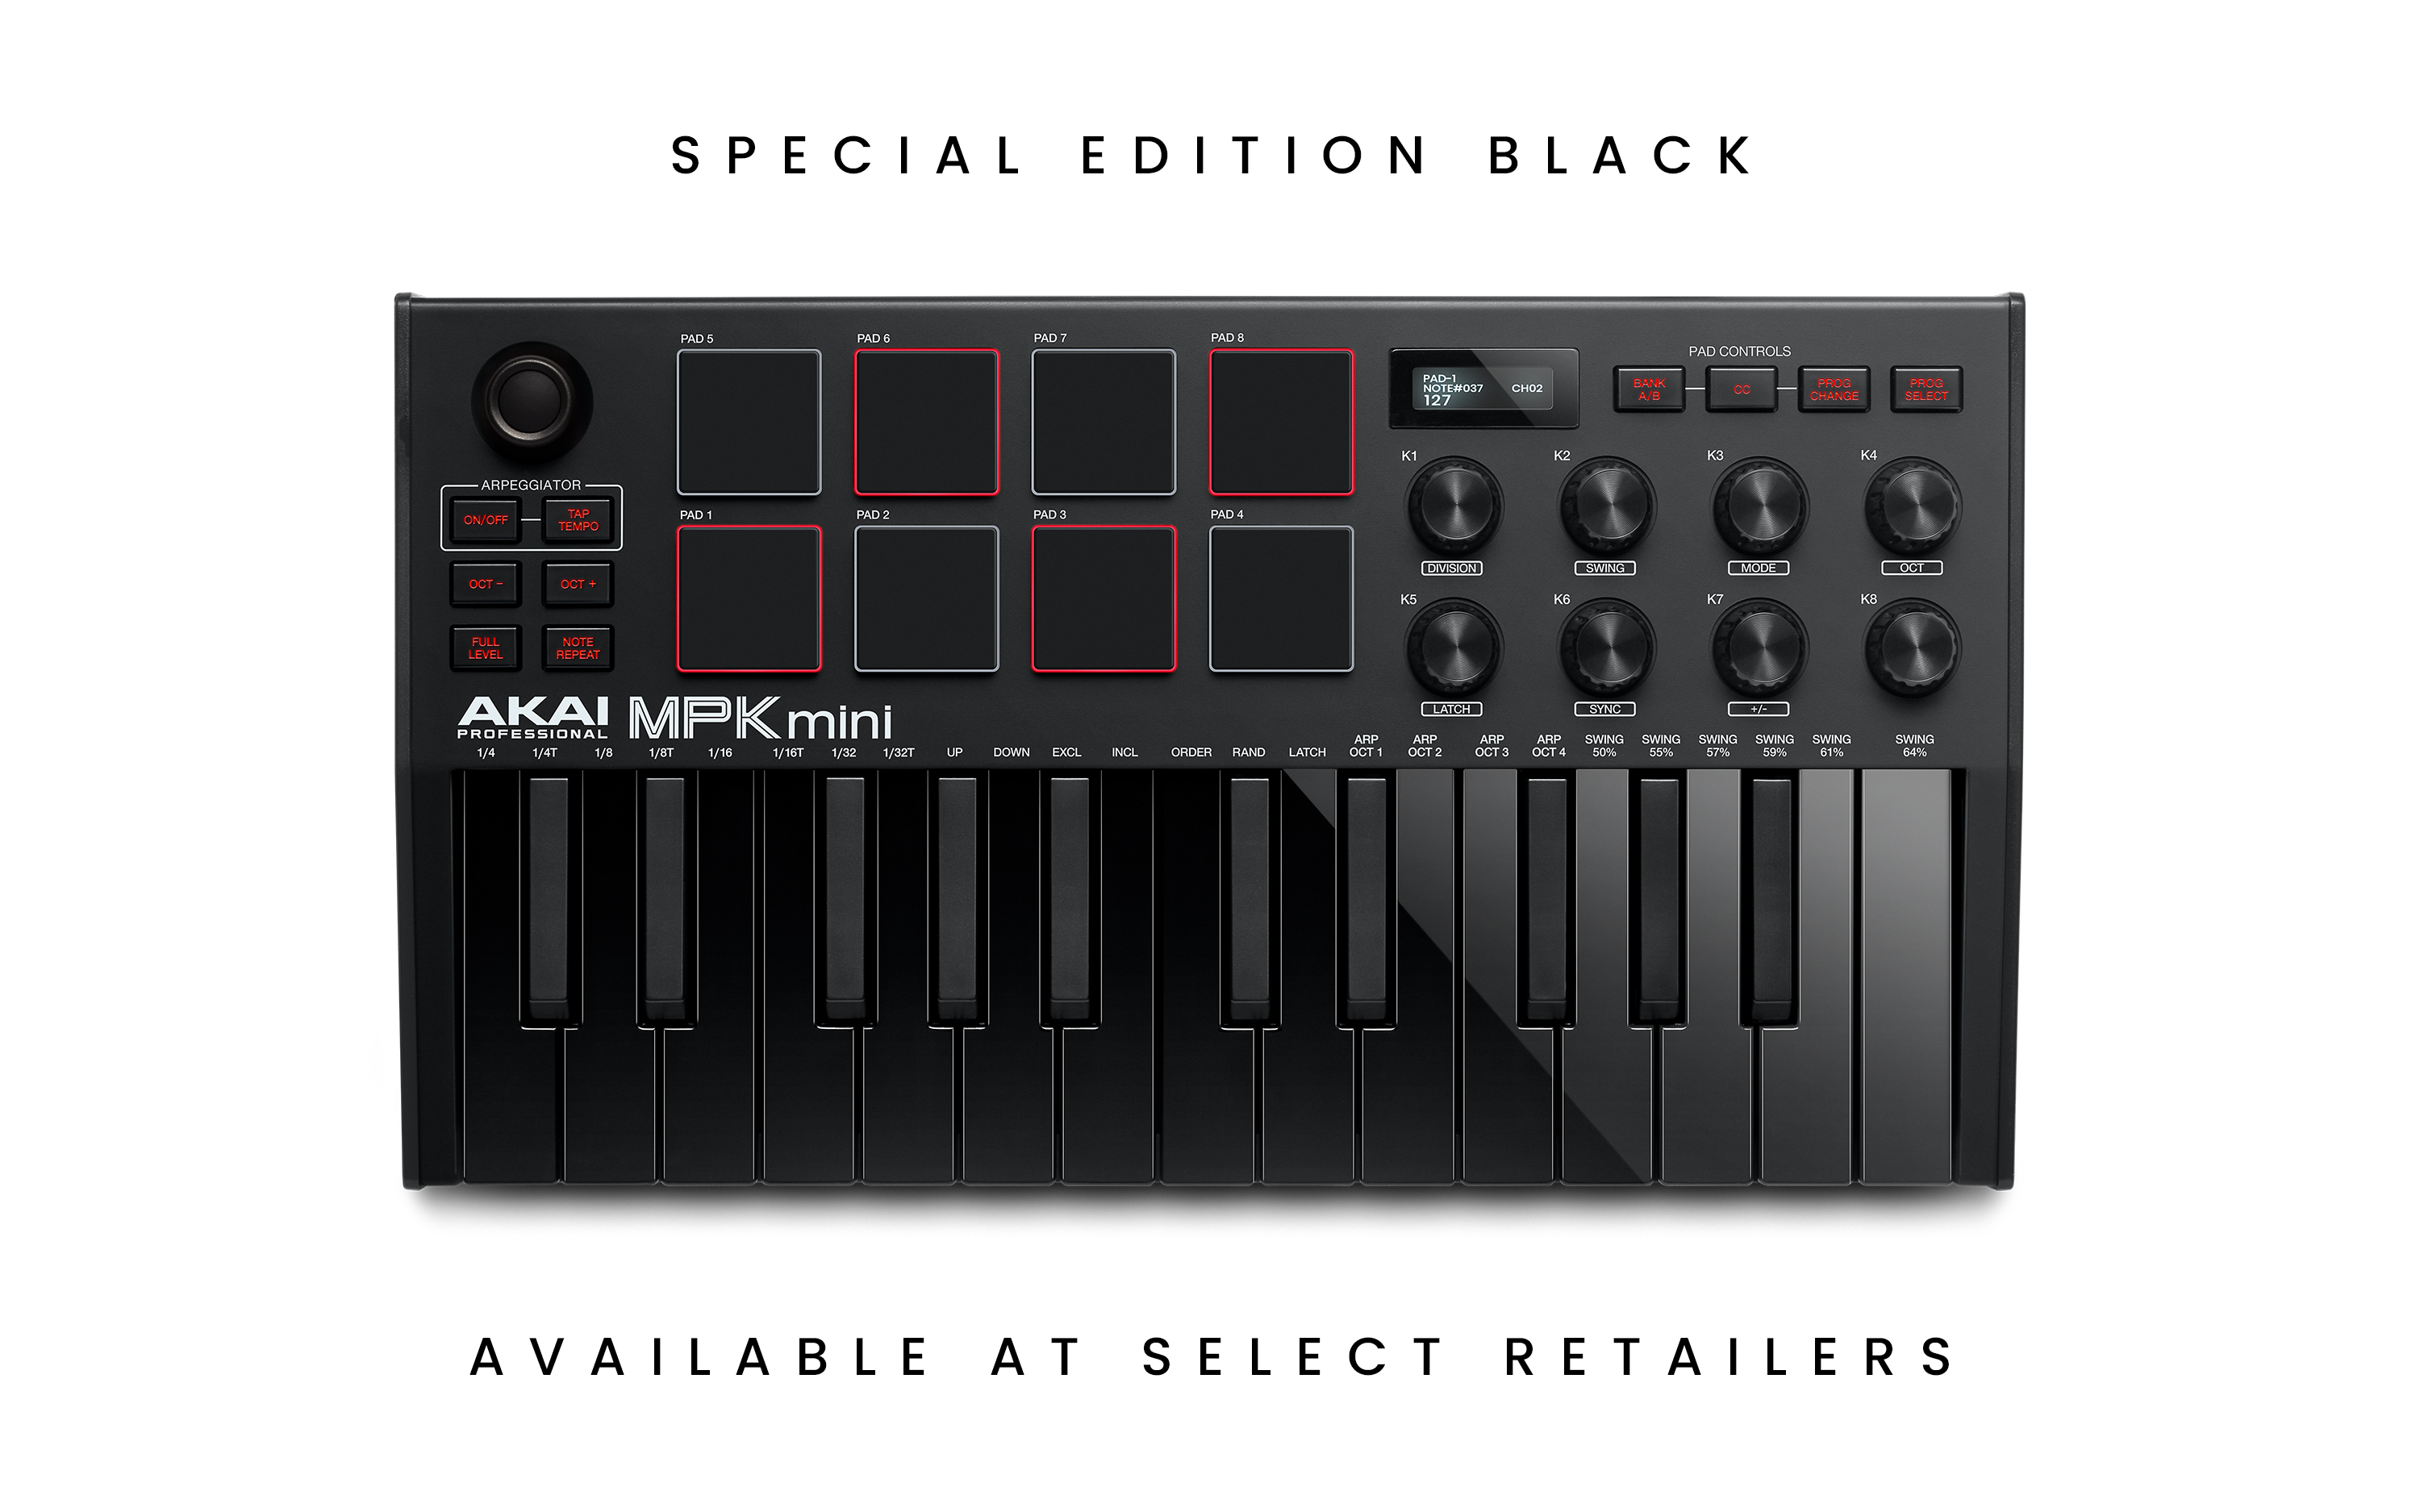 Vista de arriba hacia abajo del controlador MPK Mini MIDI en Special Edition Black